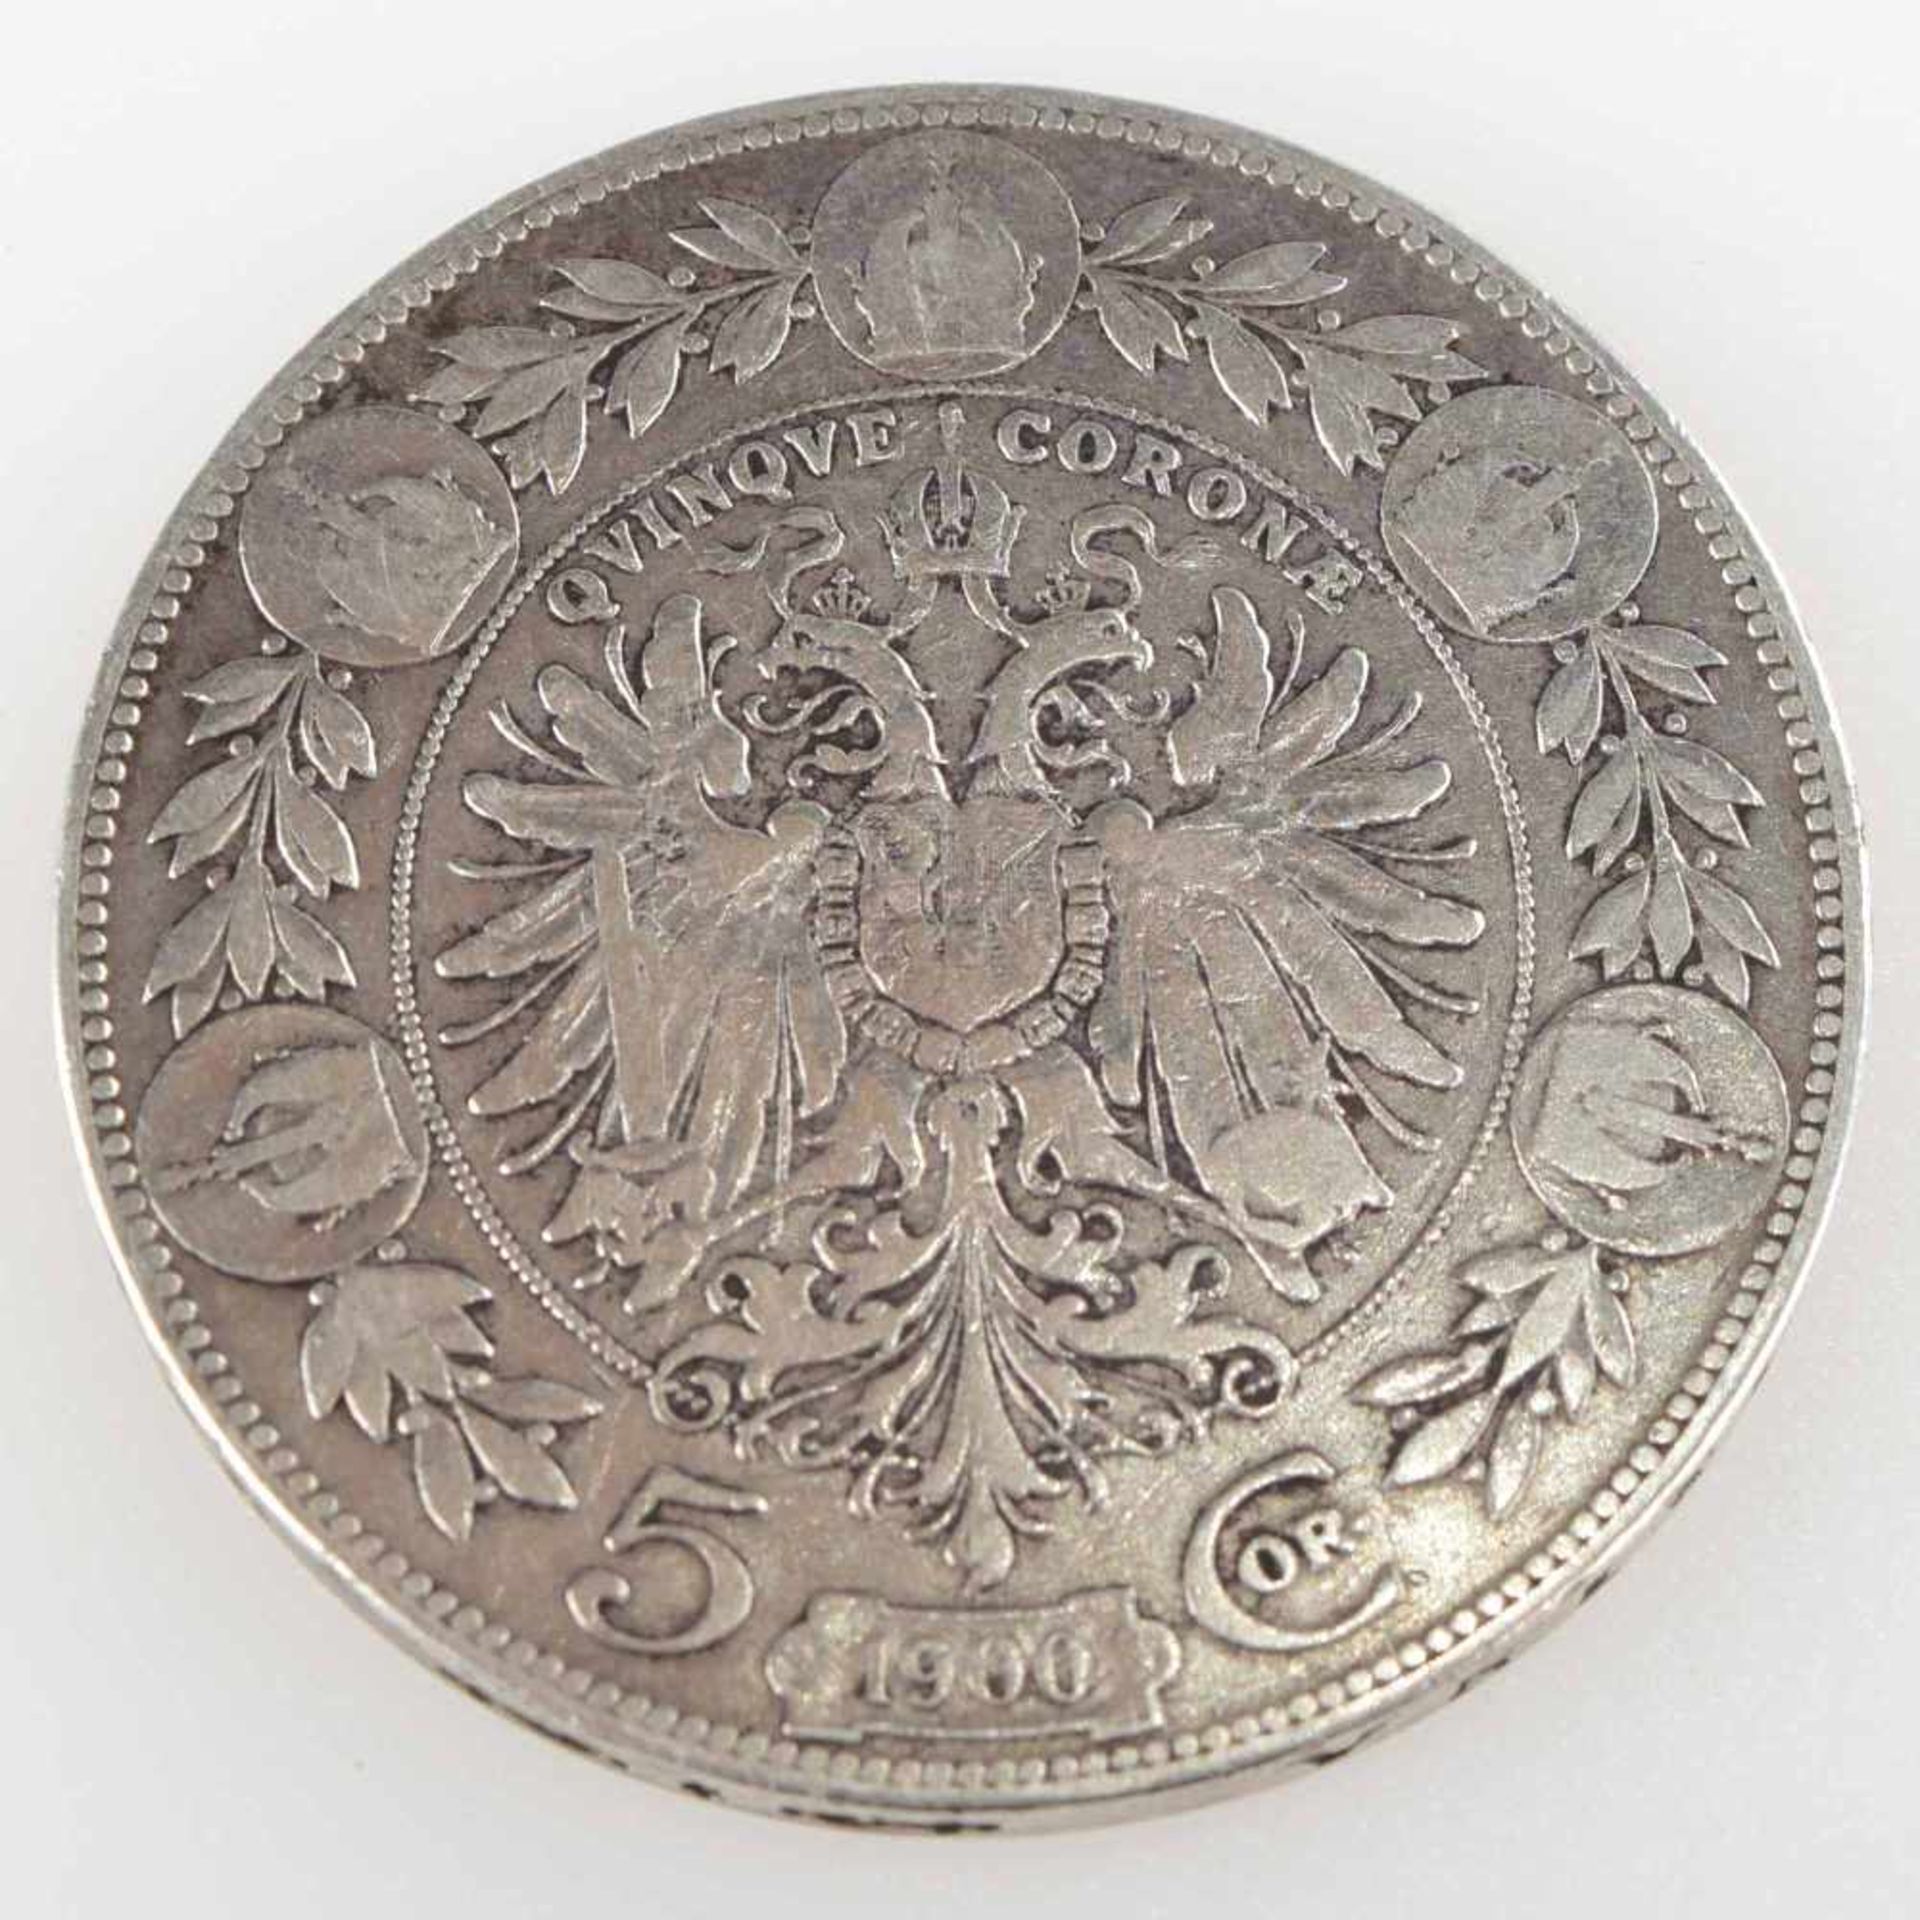 Silbermünze Österreich-Ungarn 1900 5 Kronen, av. Franz Joseph Kopf rechts mit Lorbeer (1848 - 1916), - Bild 3 aus 3